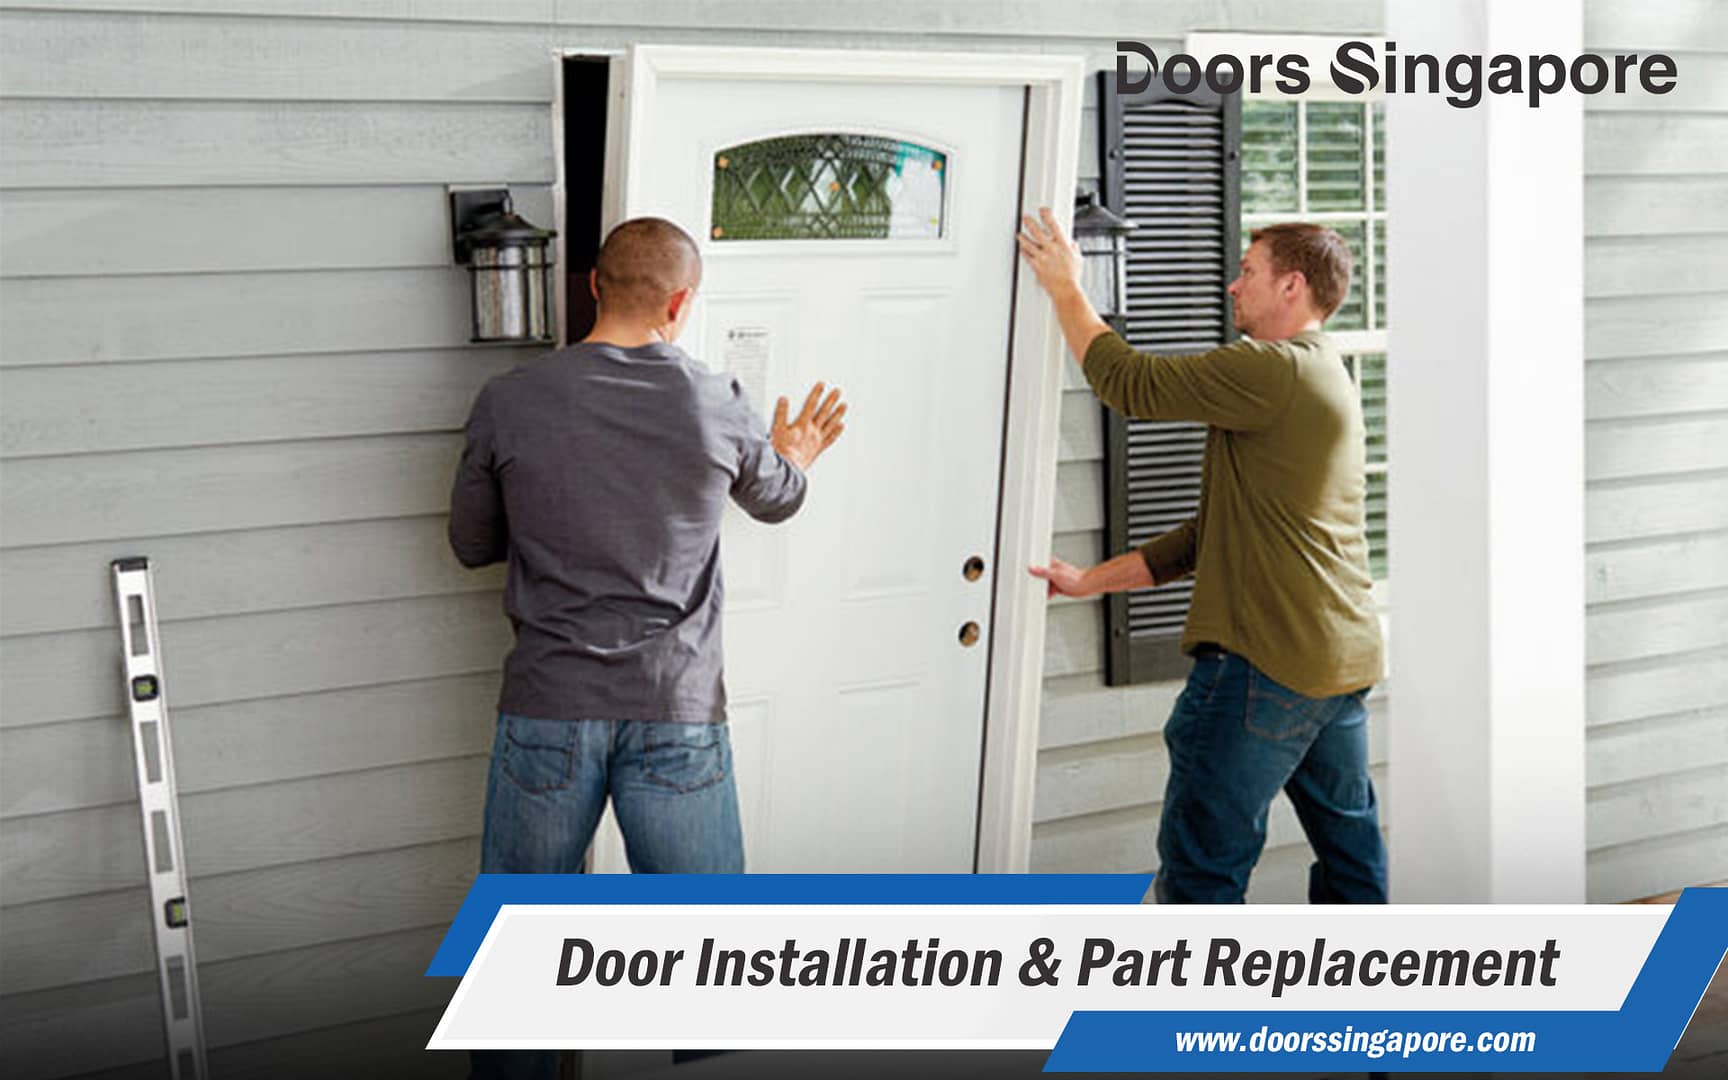  Door Installation & Part Replacement